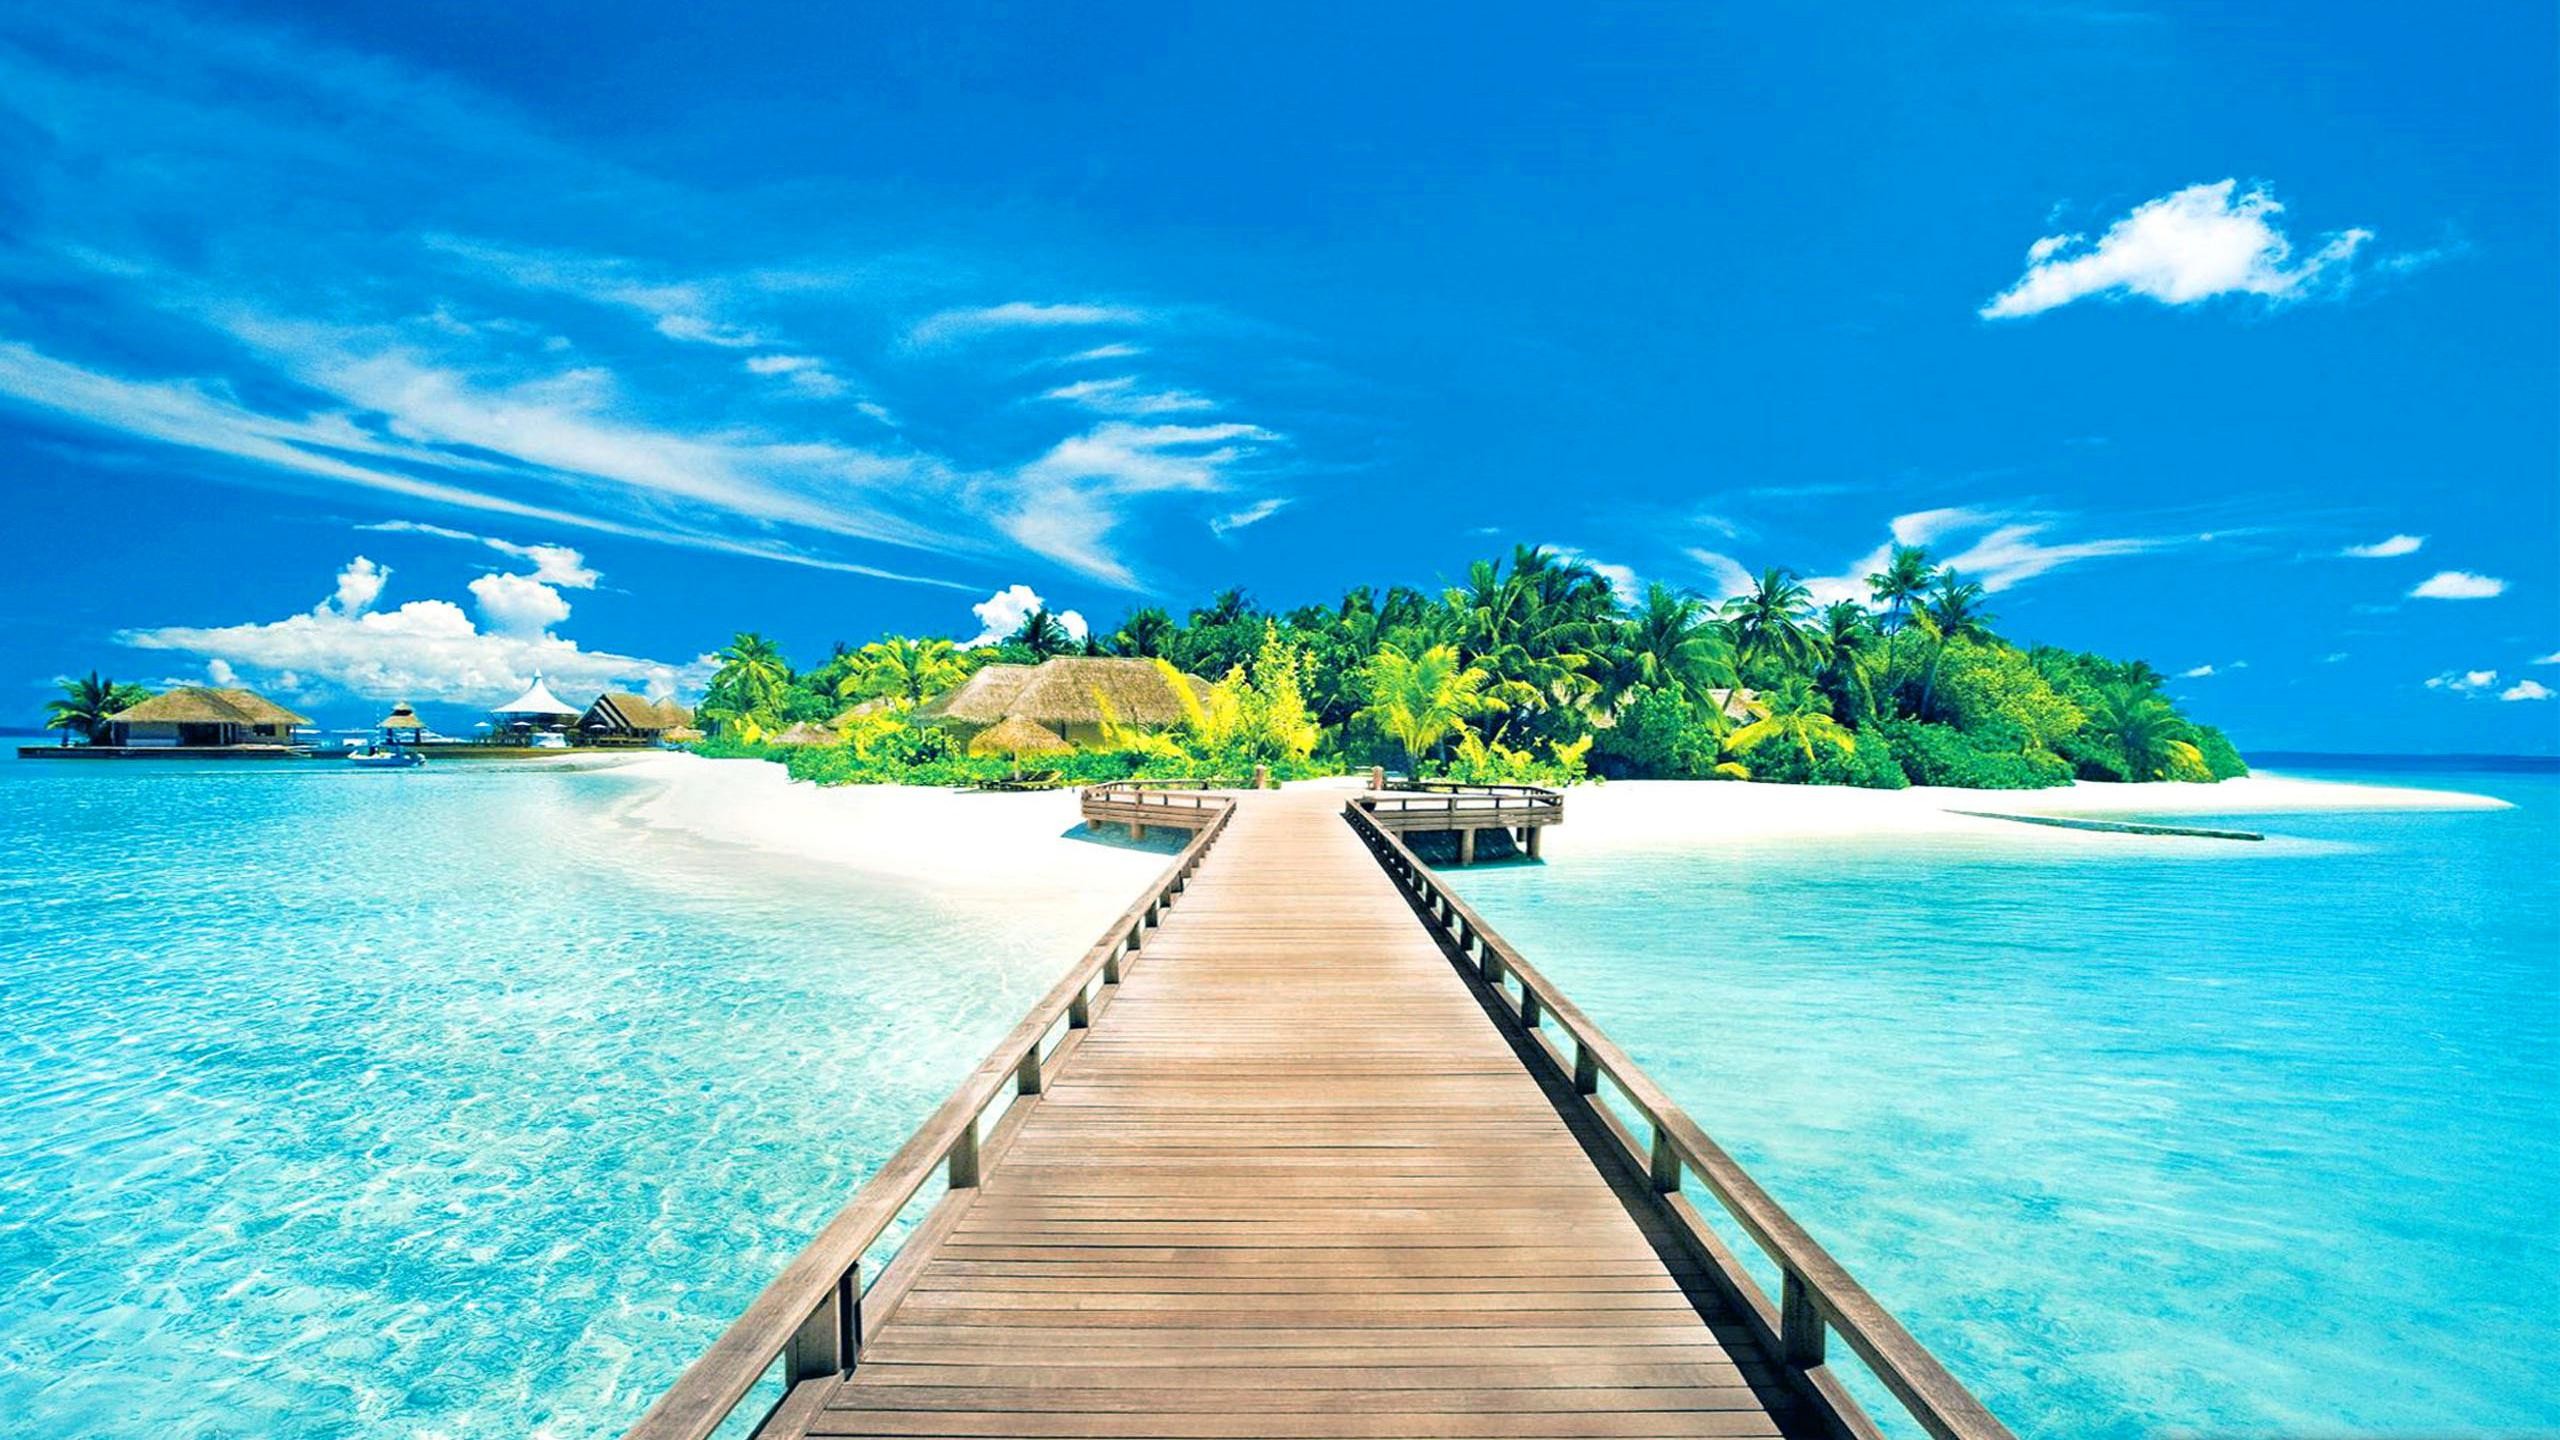 2560x1440 Beautiful Tropical Islands Desktop Wallpaper - WallpaperSafari Tropical Island  Wallpaper - http://whatstrendingonline.com .